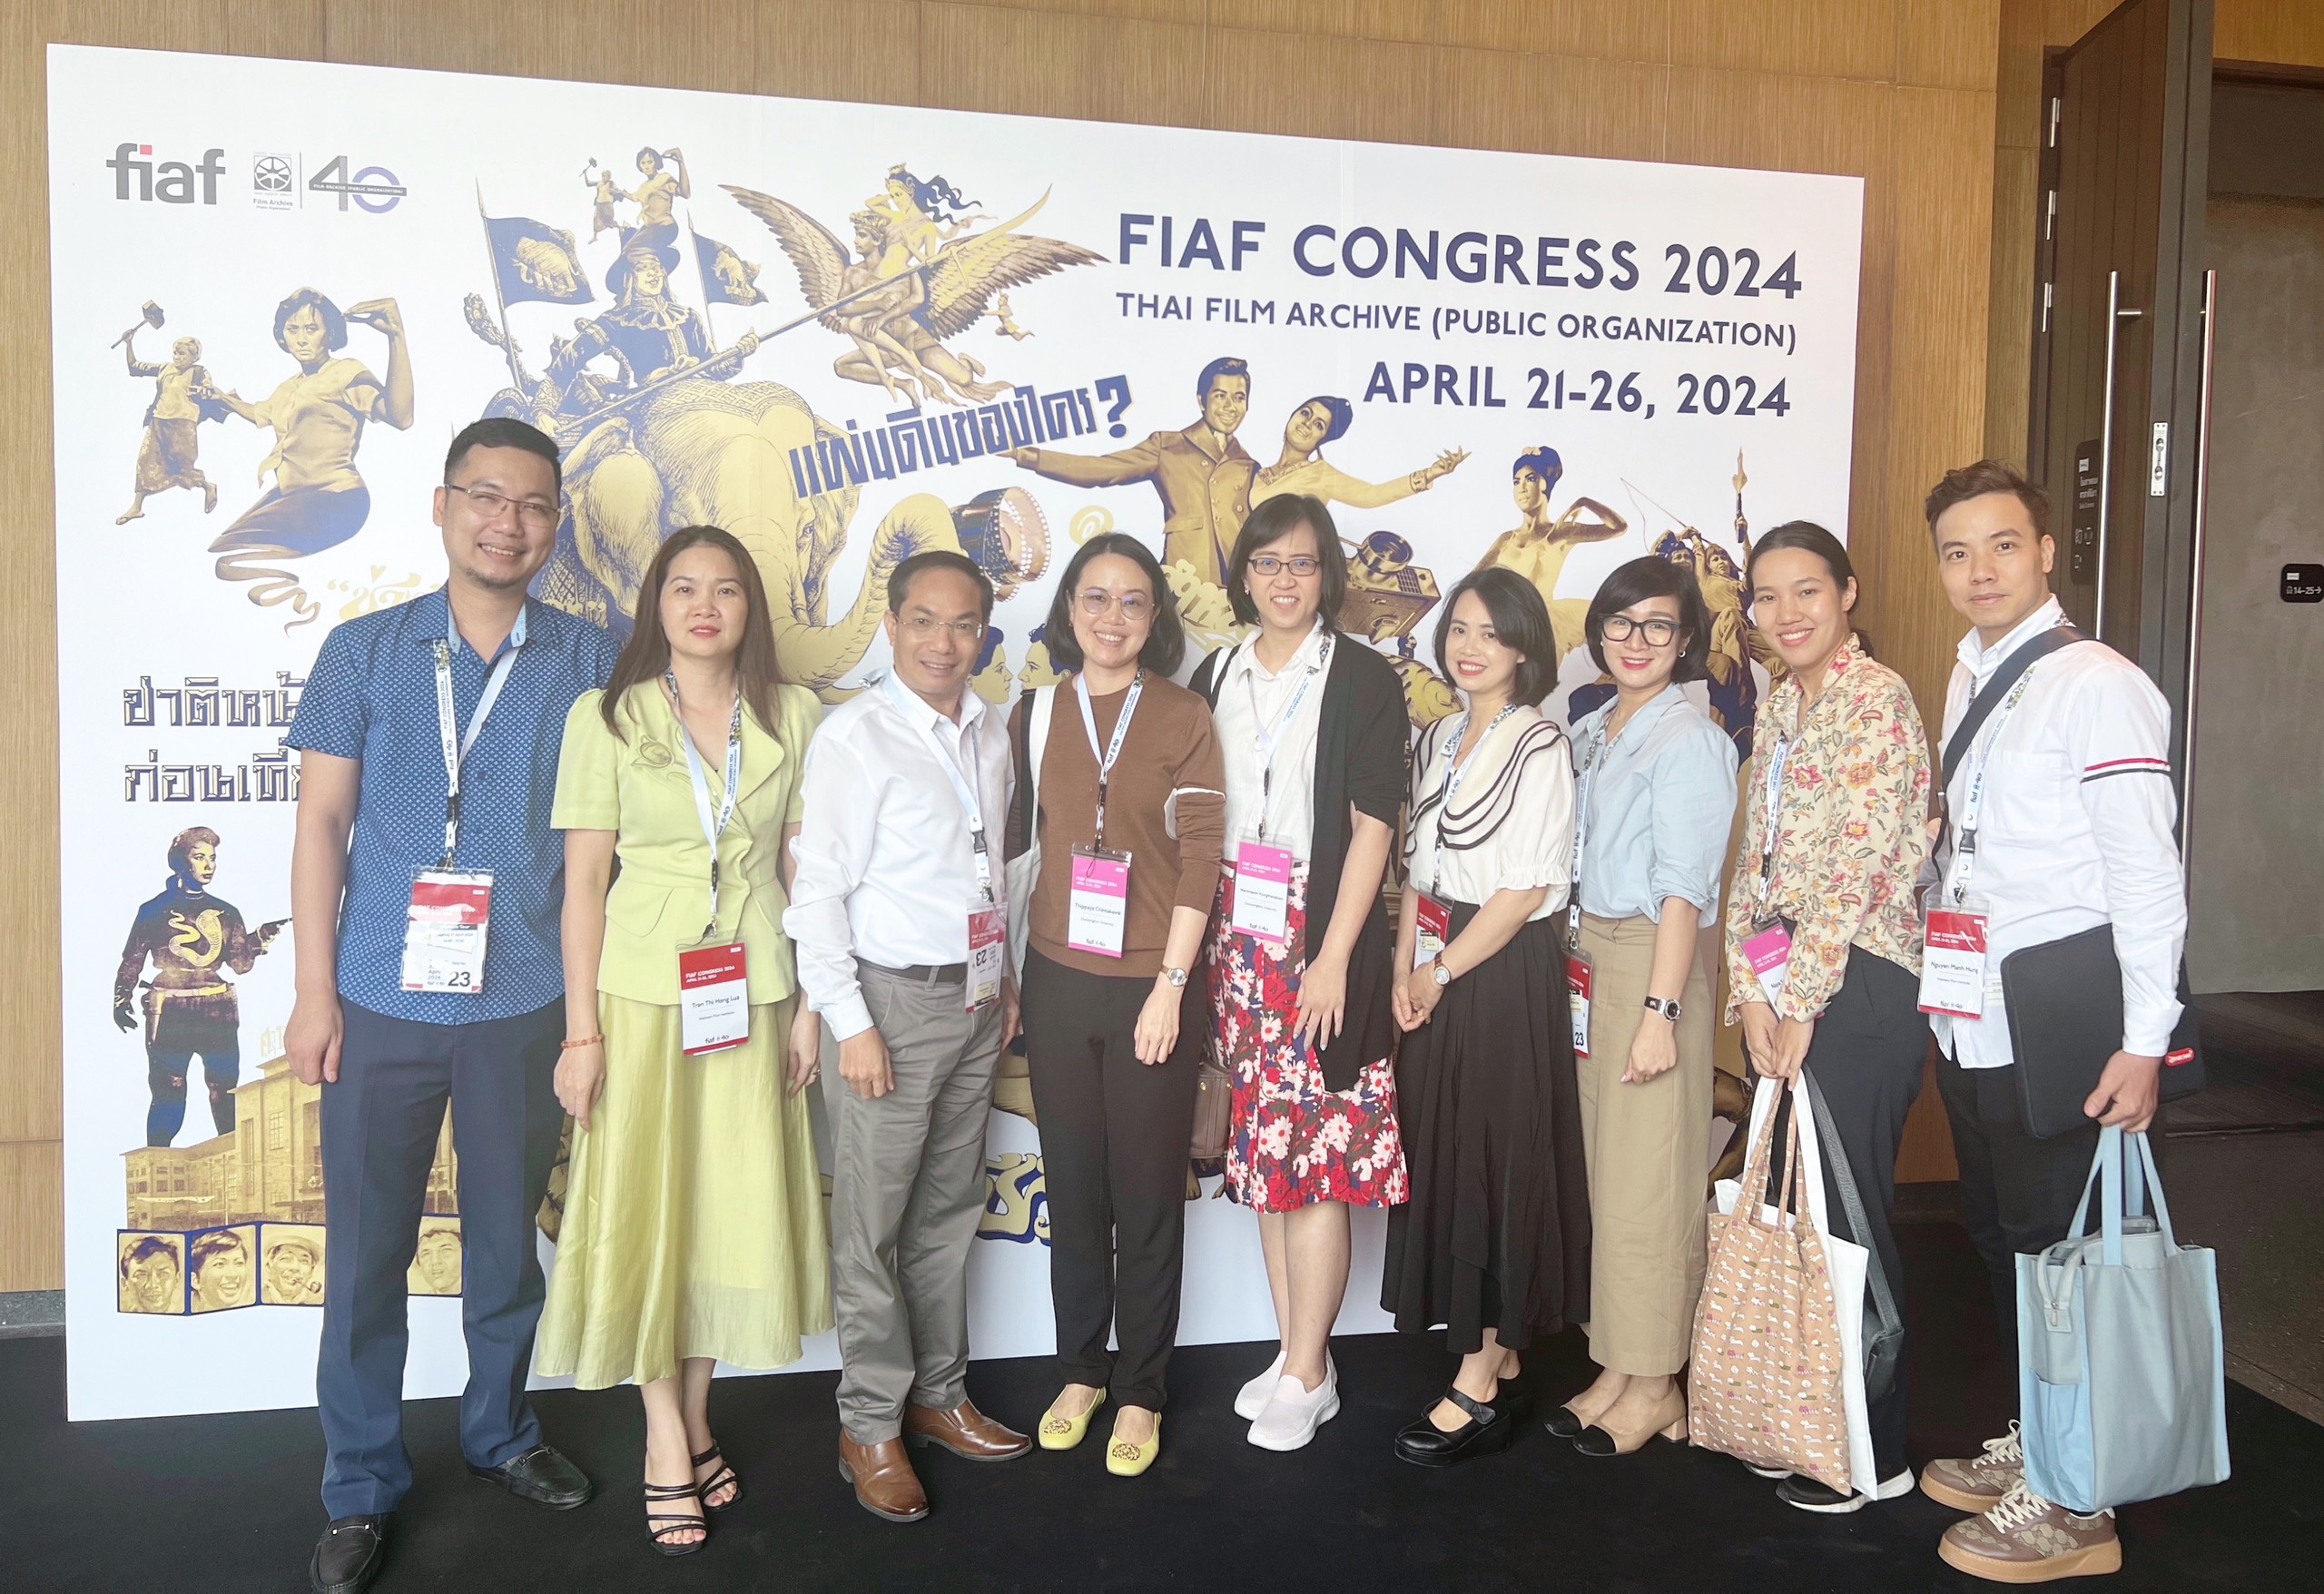 Hội nghị FIAF năm 2024 tại Thái Lan với chủ đề "Các Cơ quan Lưu trữ phim ở phía Nam bán cầu"